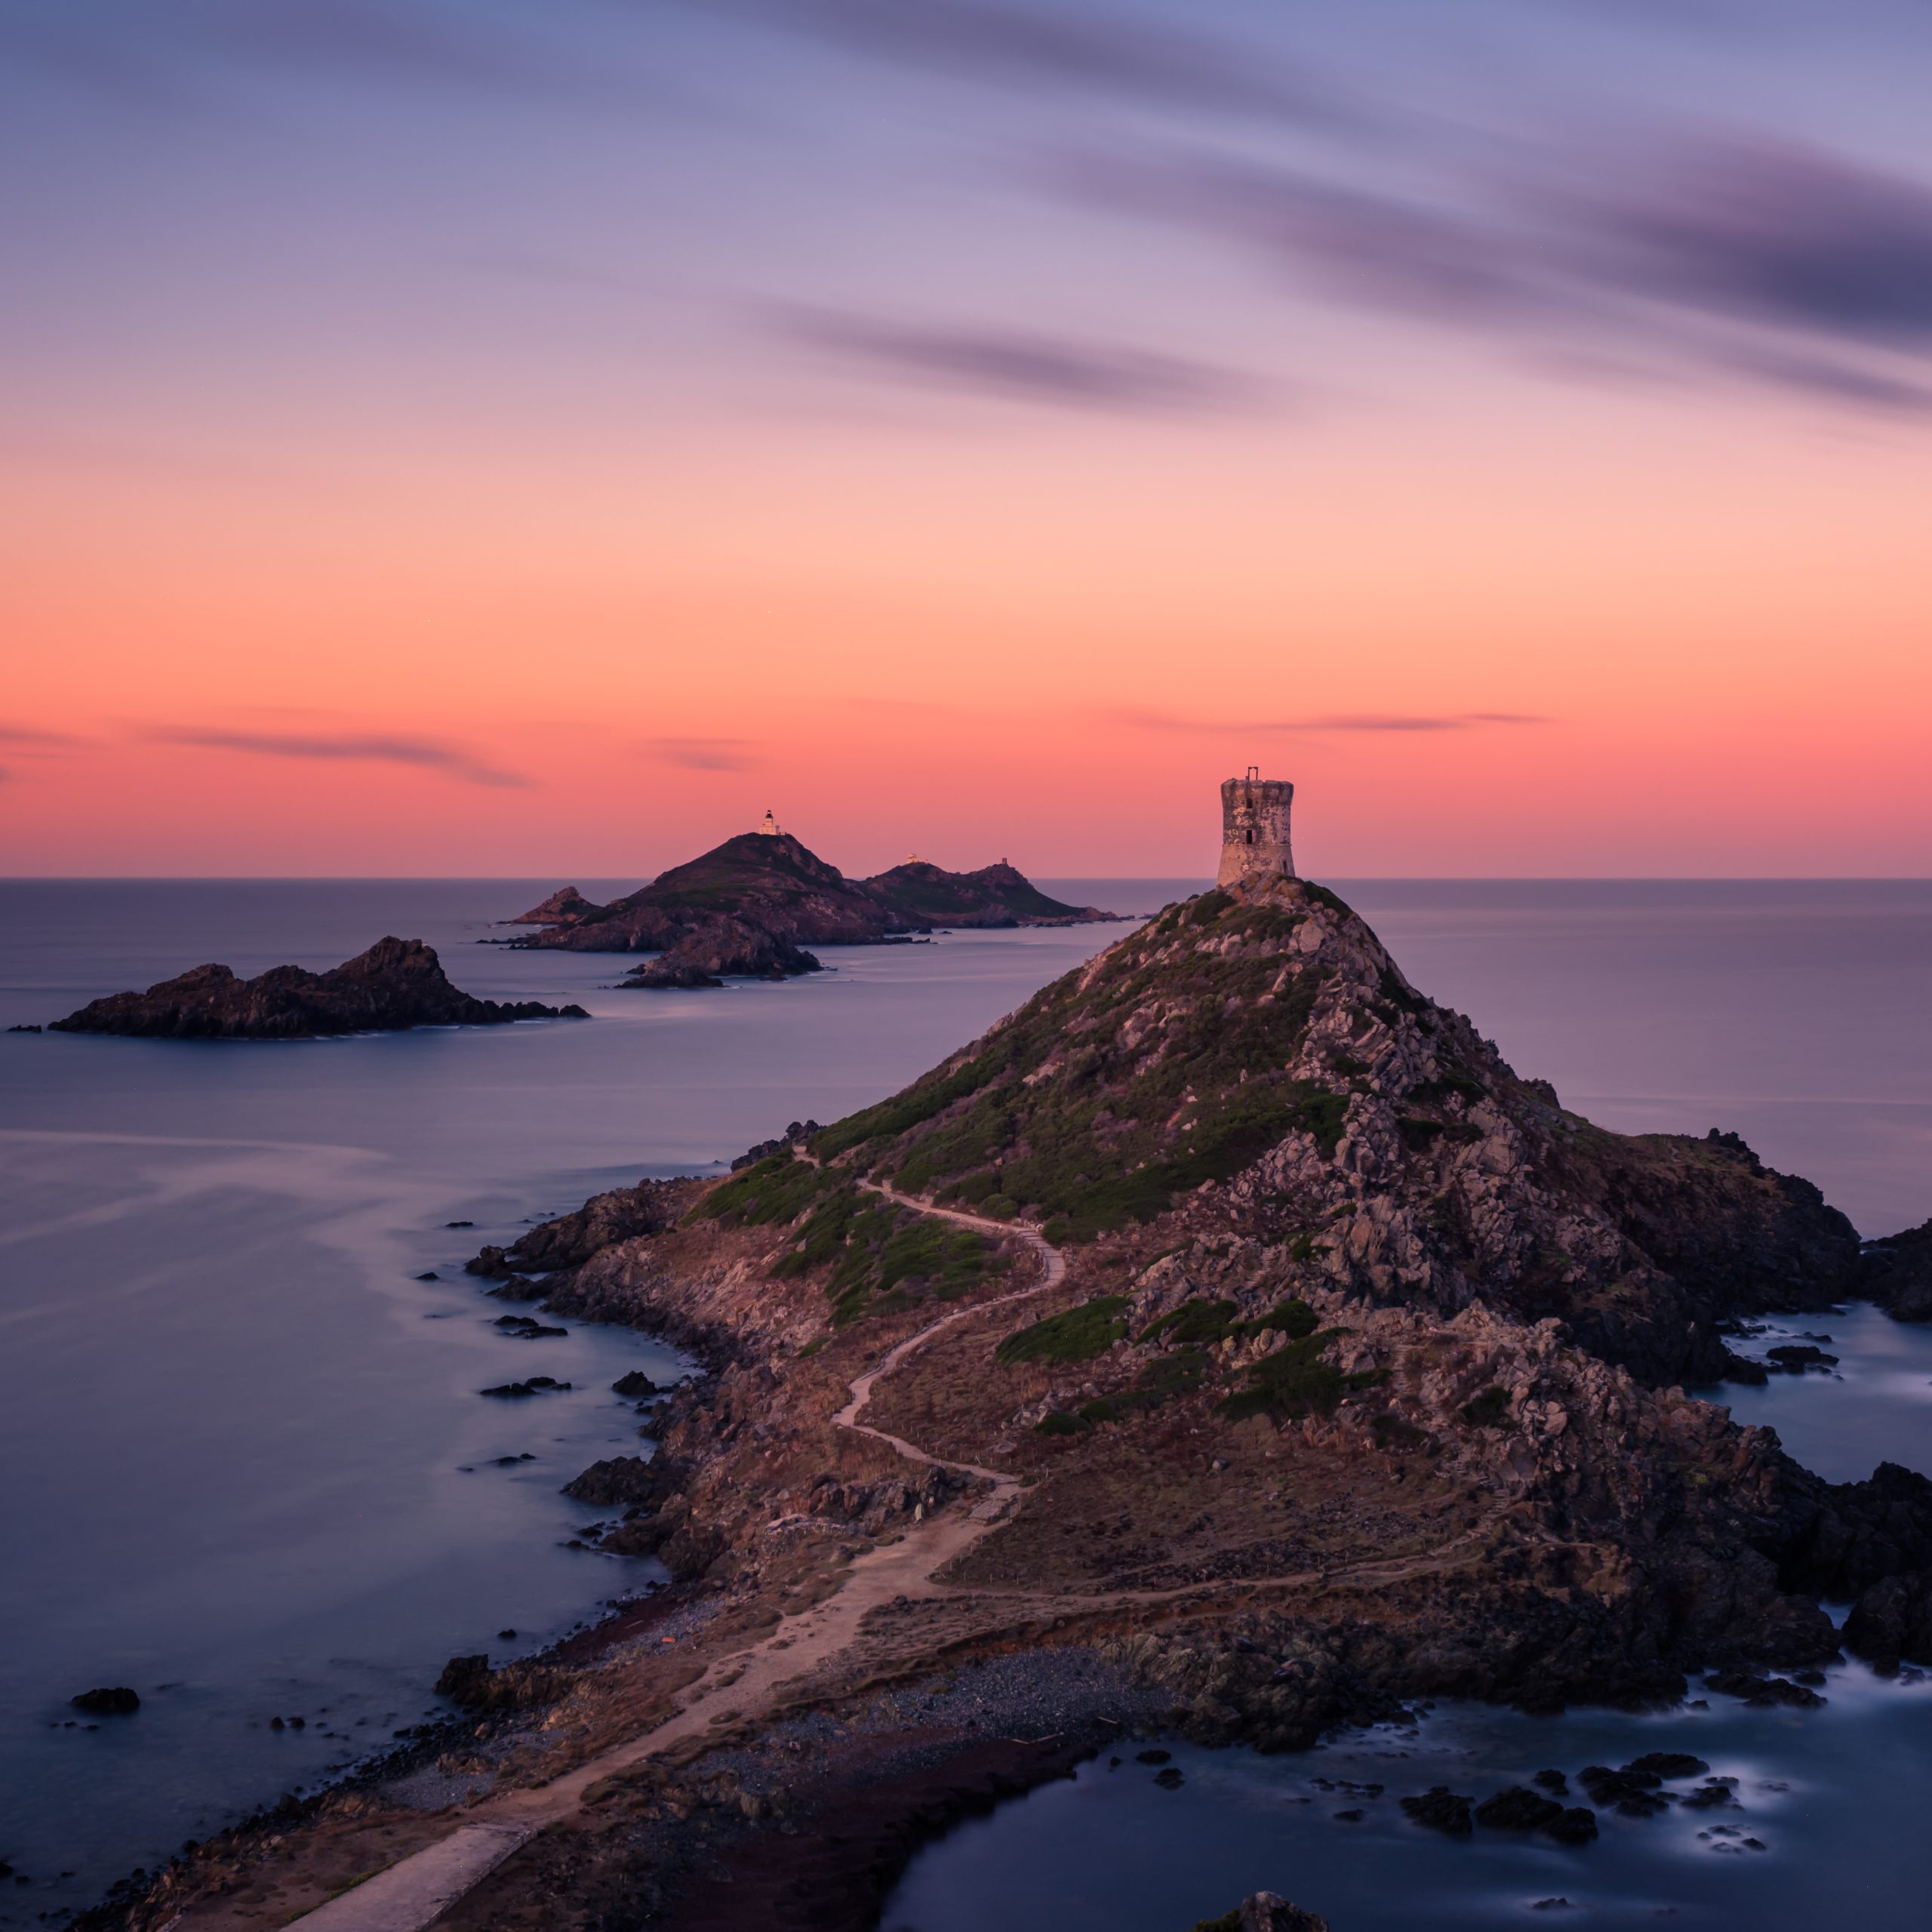 Vue panoramique sur les îles Sanguinaires entourées de la mer en Corse au lever du soleil